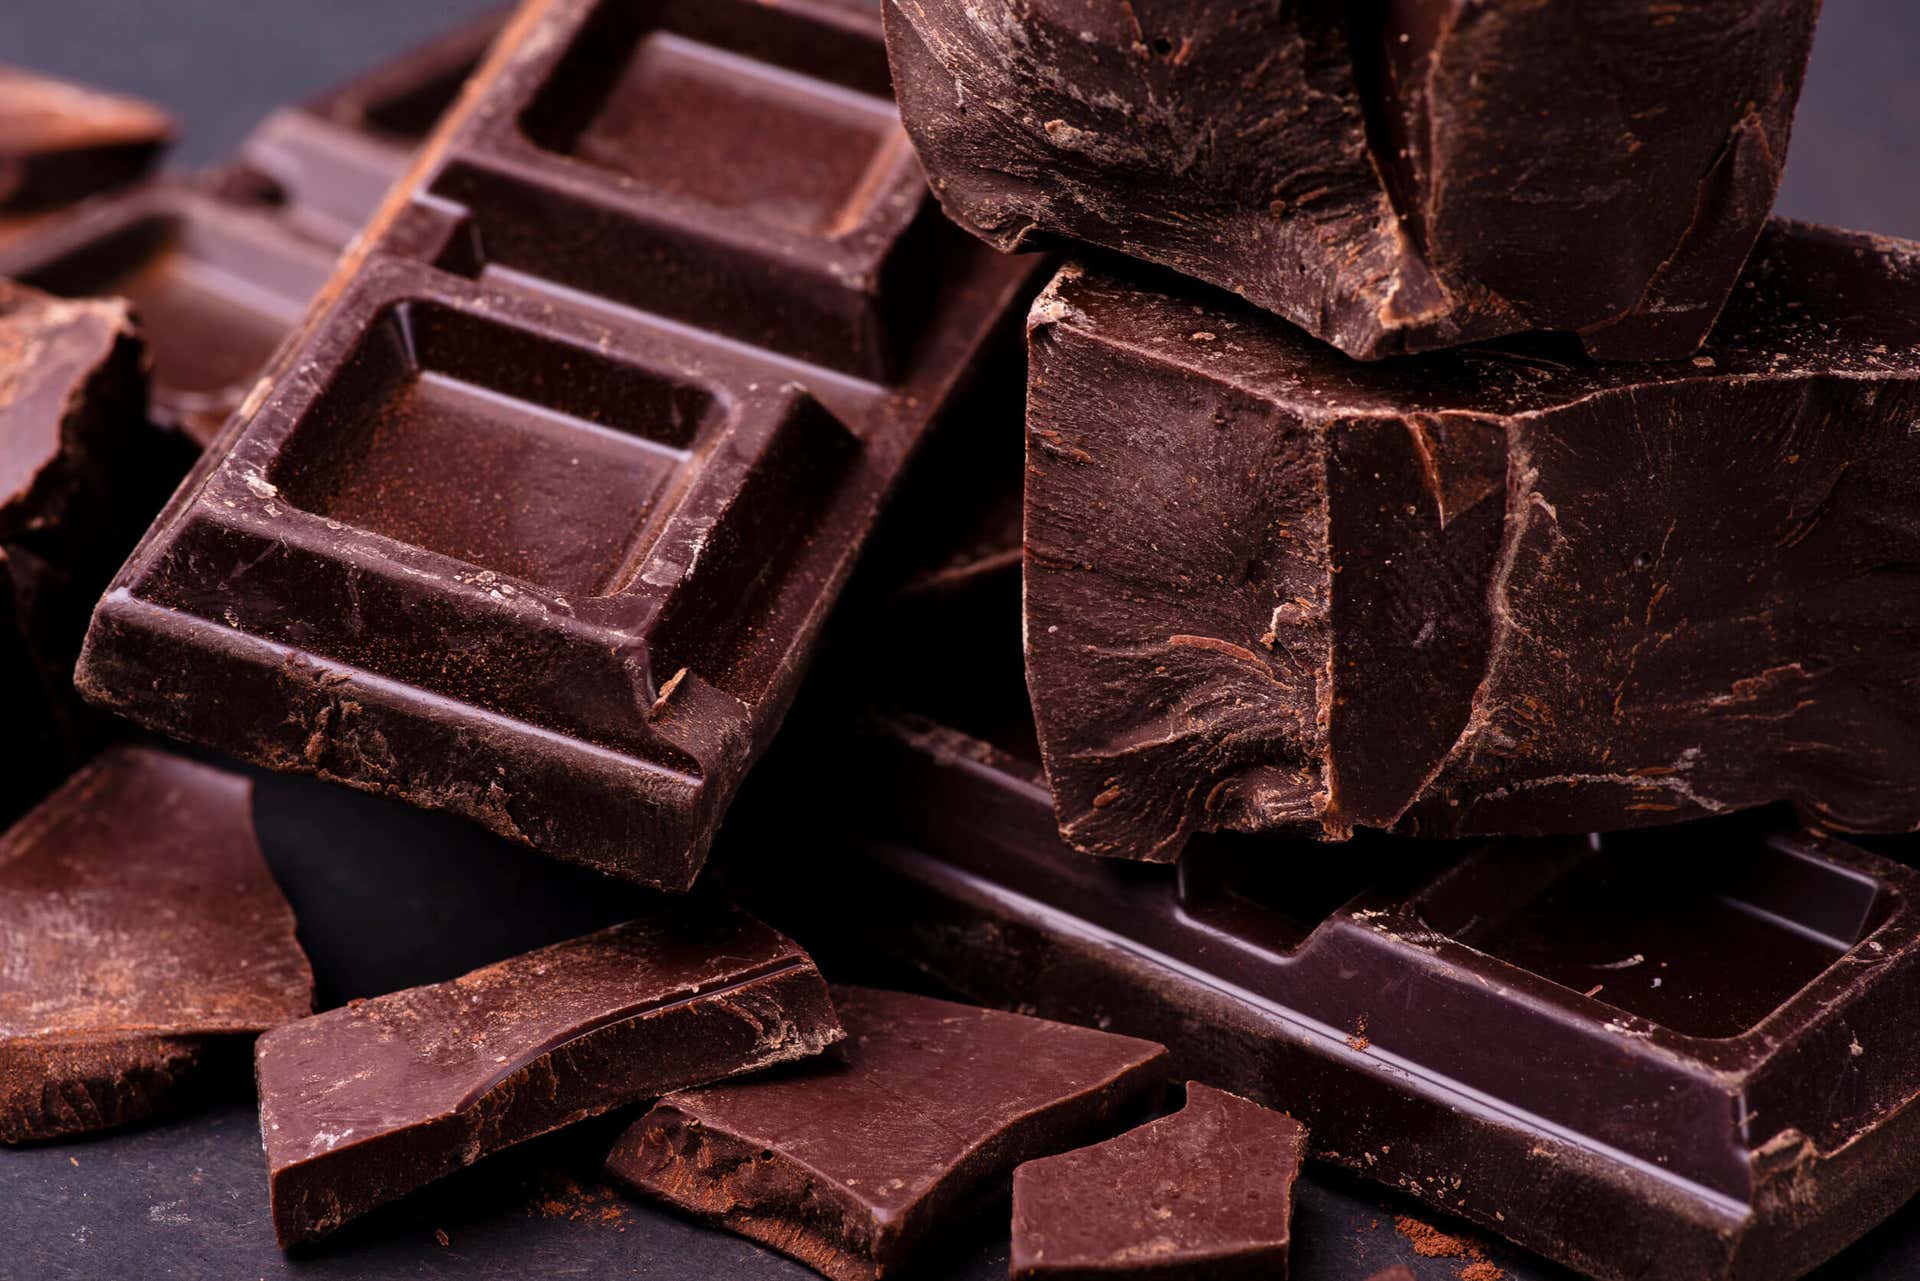 Ju högre kakaohalt i choklad, desto högre koffeinhalt.